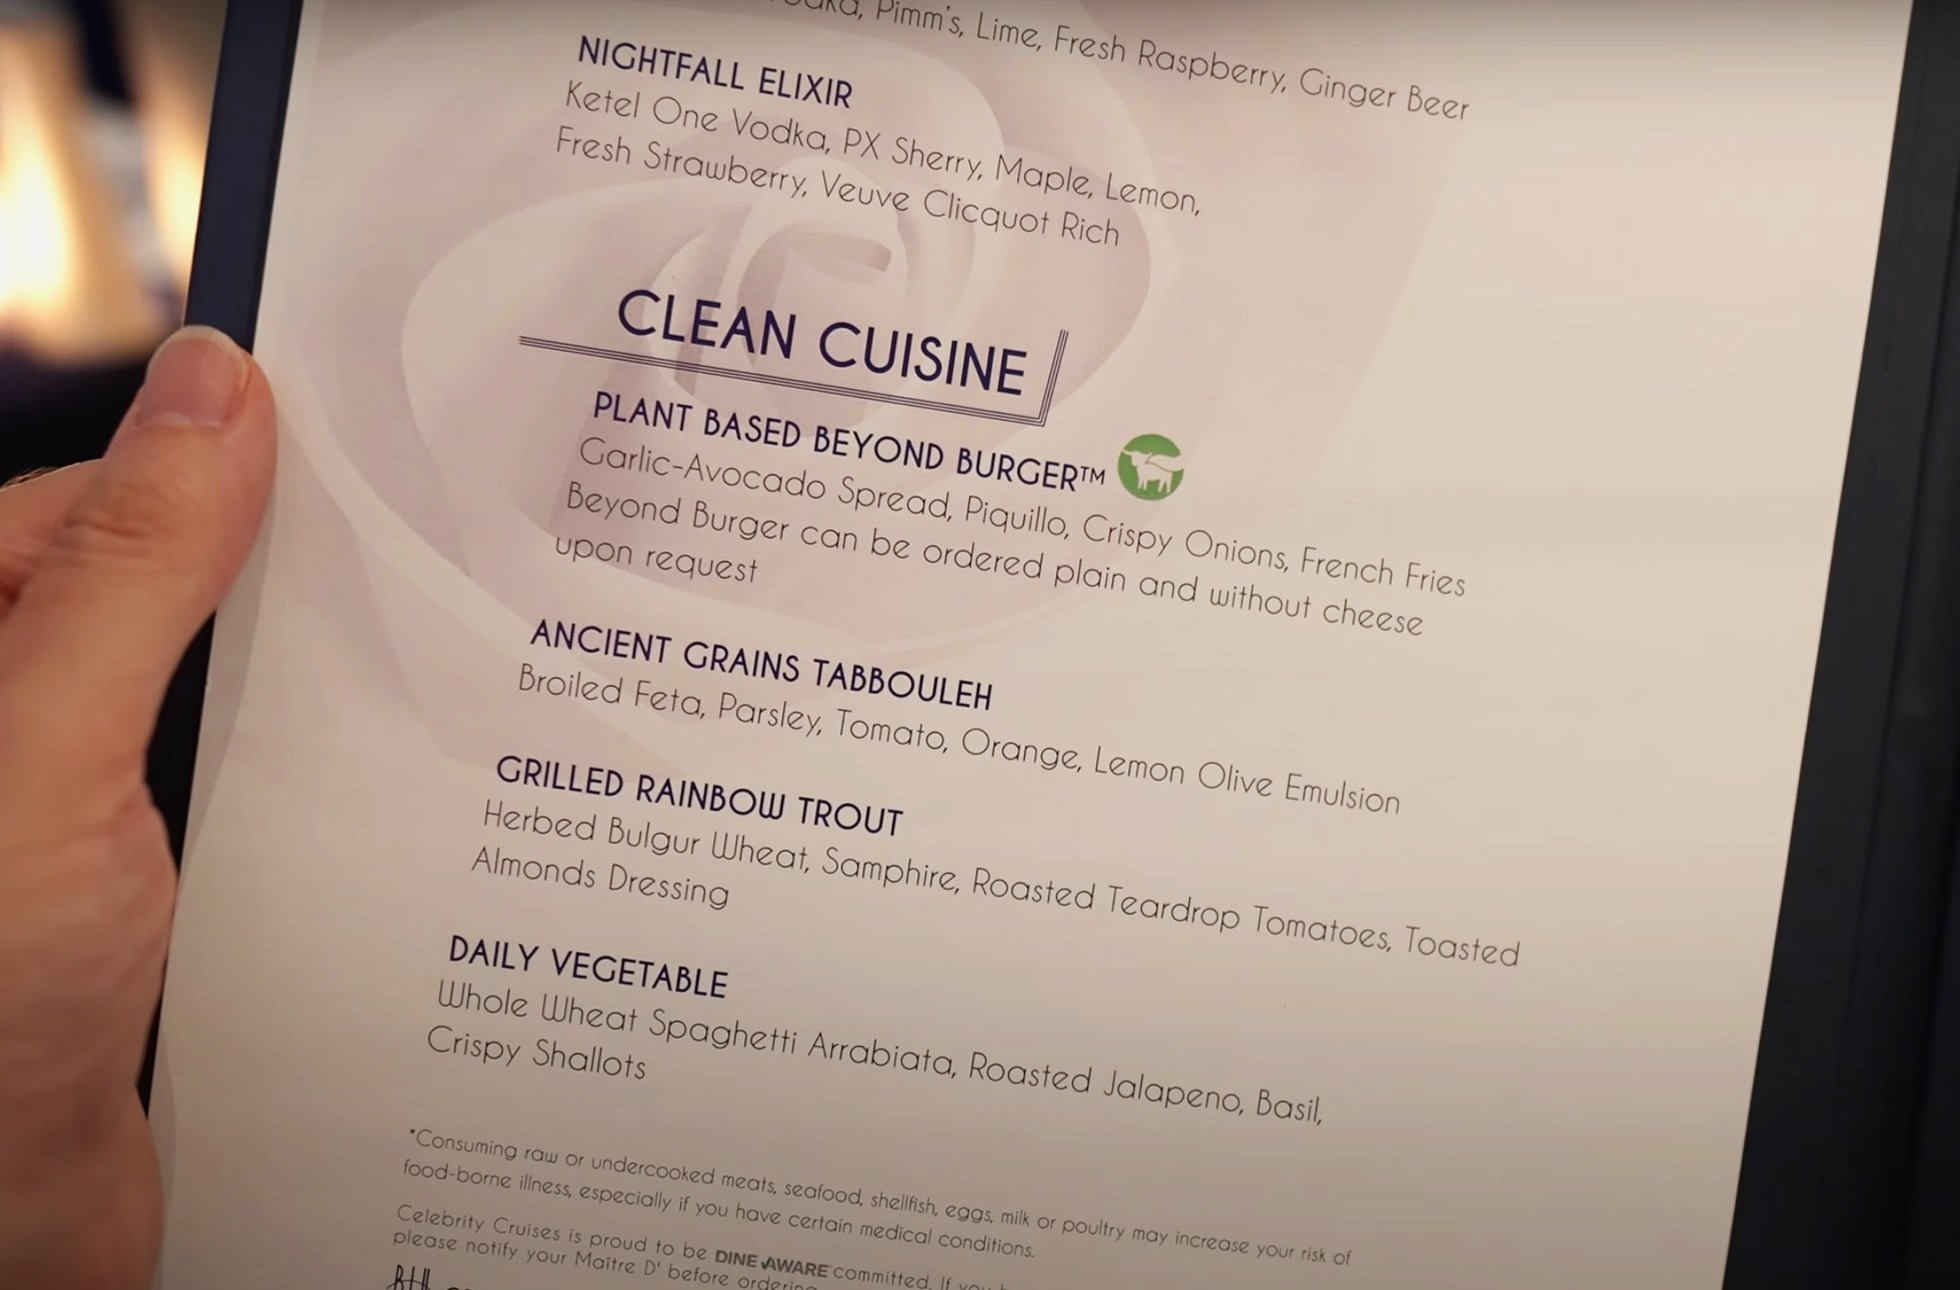  The clean cuisine menu 